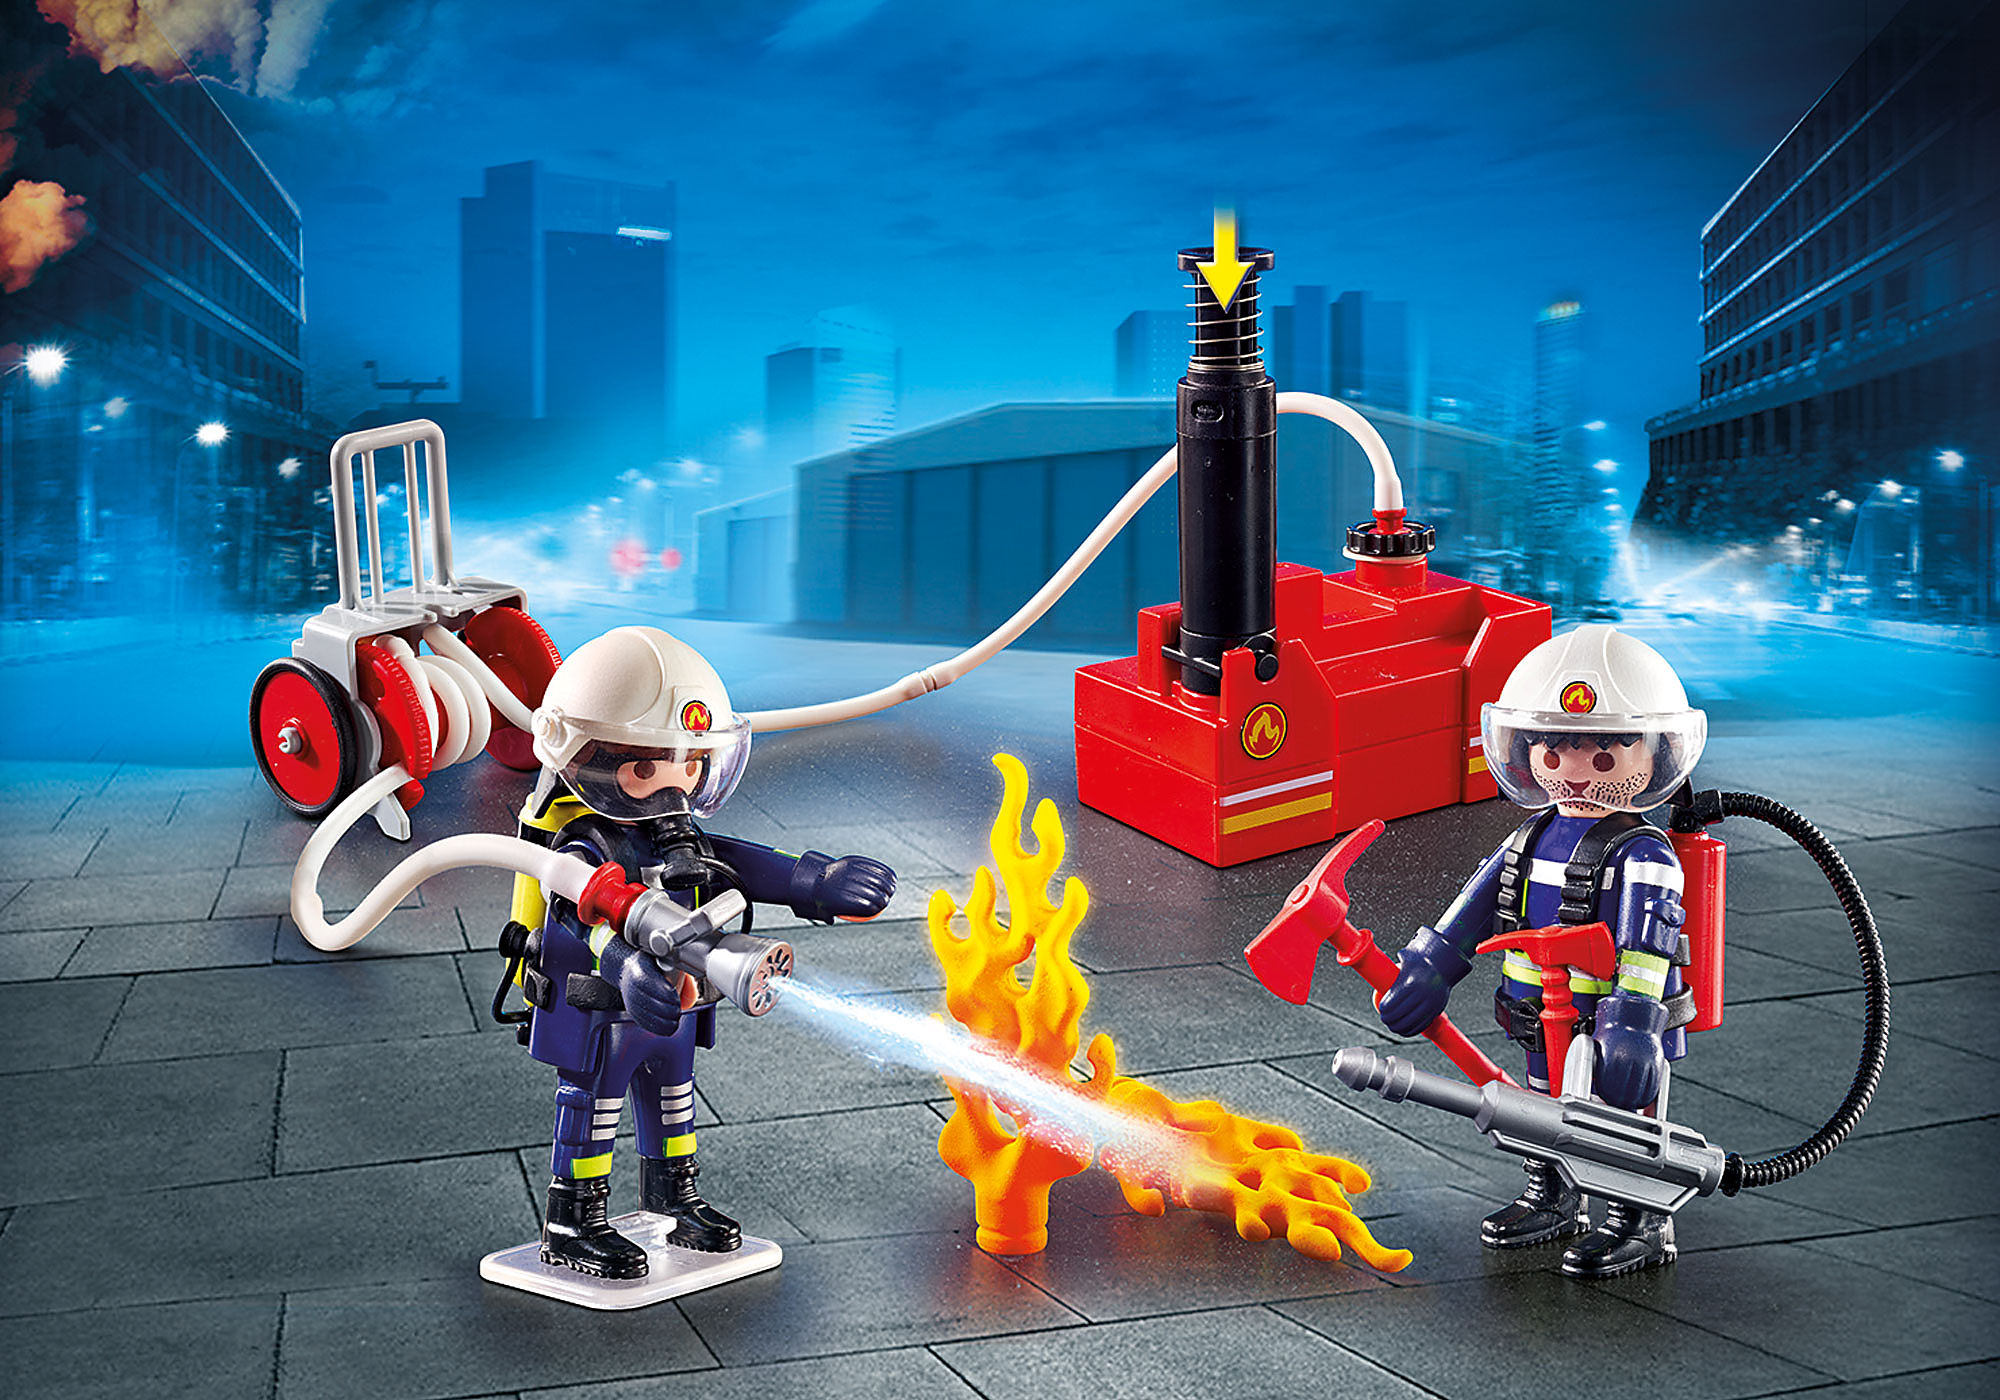 9468 'playmobil' Pompiers Avec Matériel D'incendie 1218 - N/A - Kiabi -  18.49€